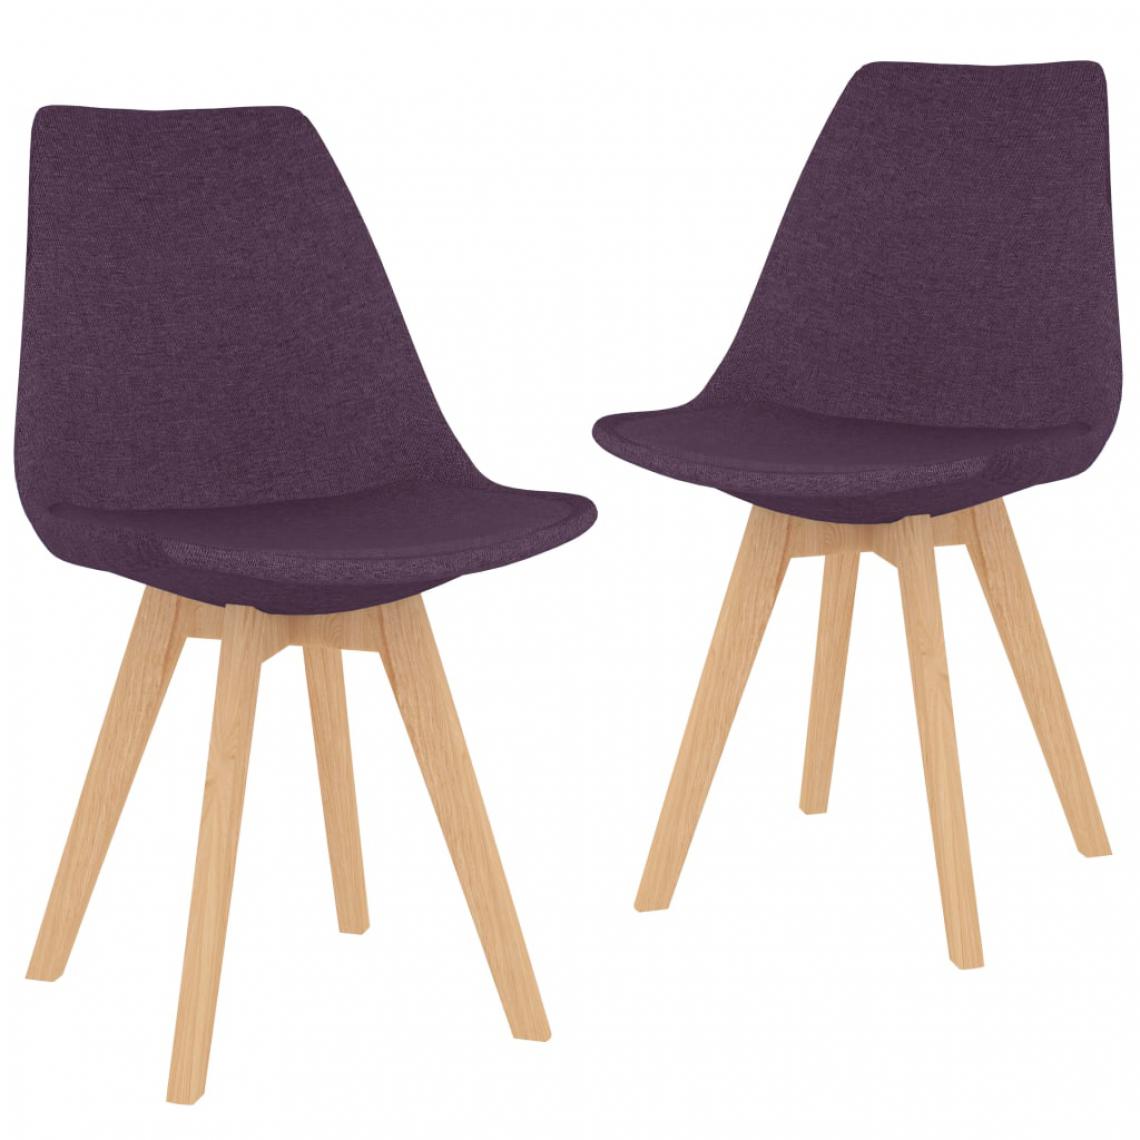 Icaverne - Contemporain Fauteuils et chaises Khartoum Chaises de salle à manger 2 pcs Violet Tissu - Chaises